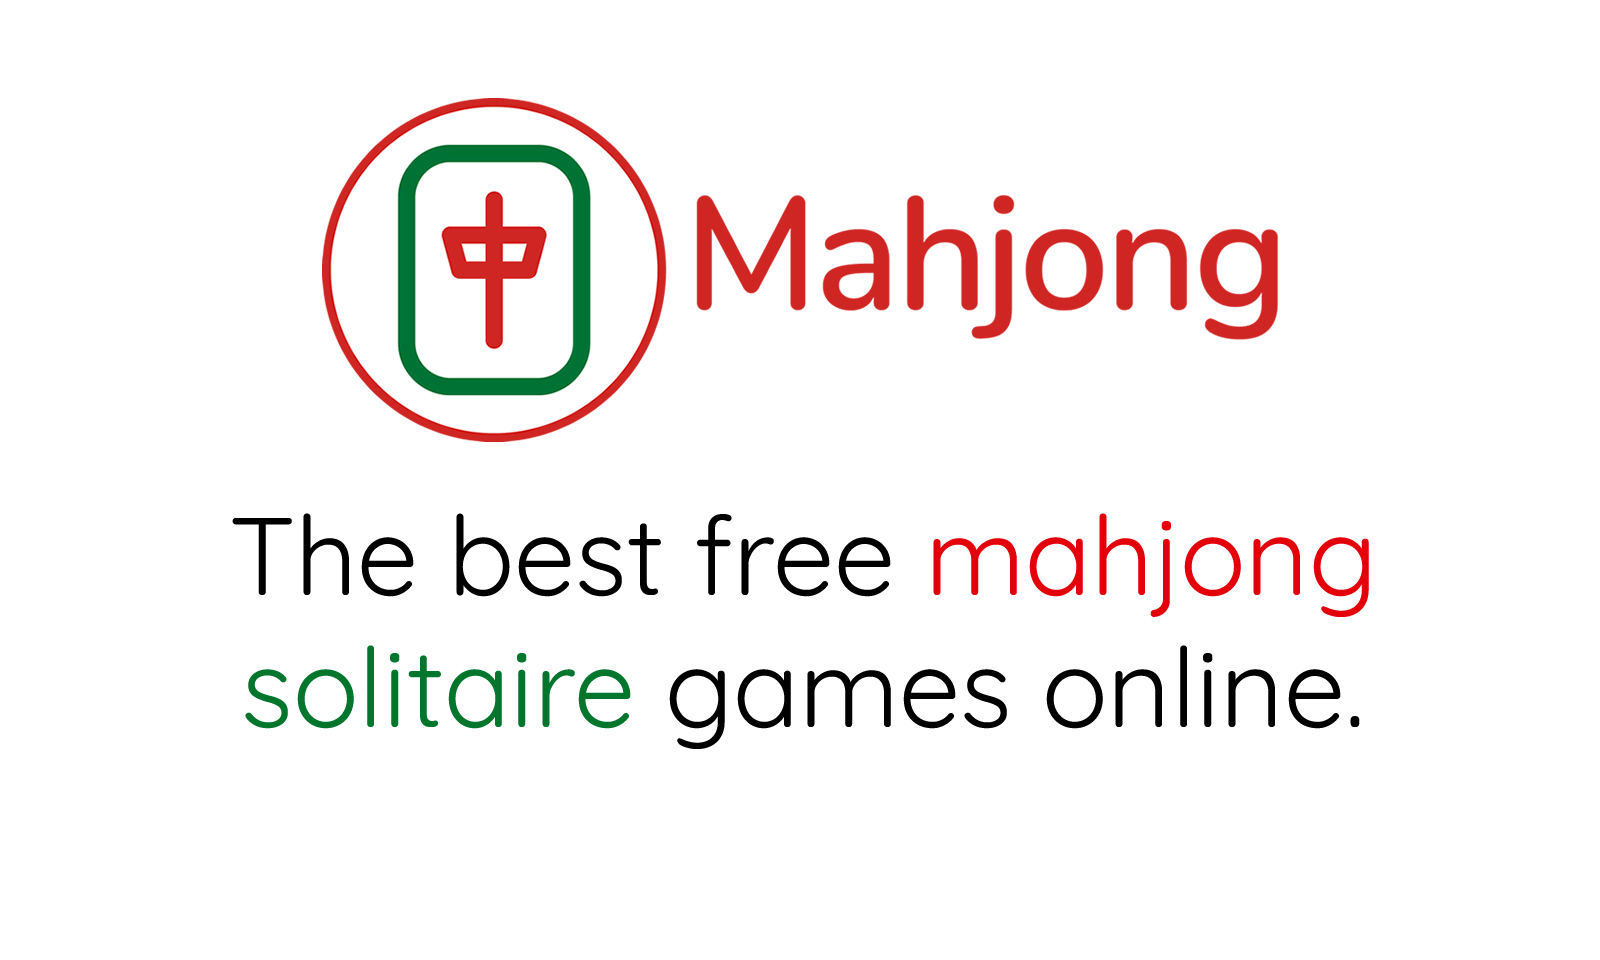 Mahjong Connect 2 - Mahjong Dragon